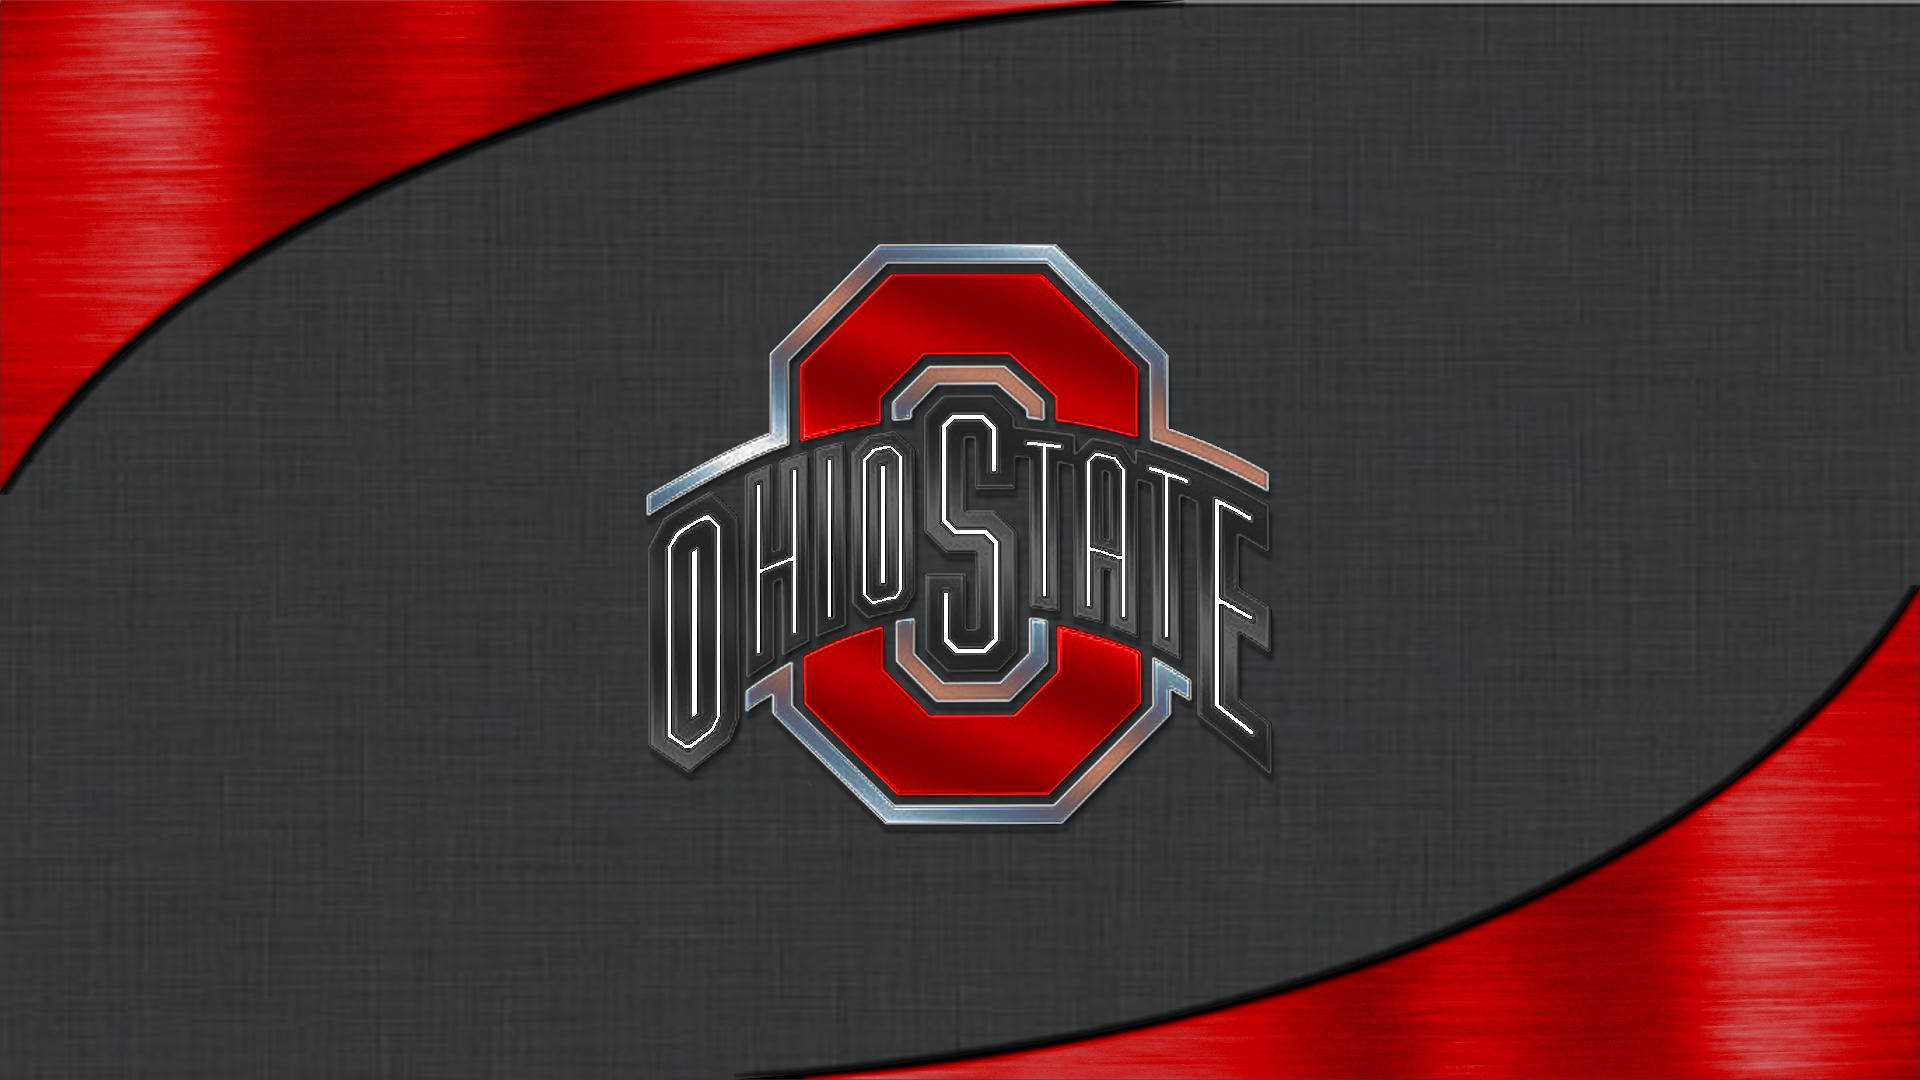 Ohio State University Dark Gray And Red Background